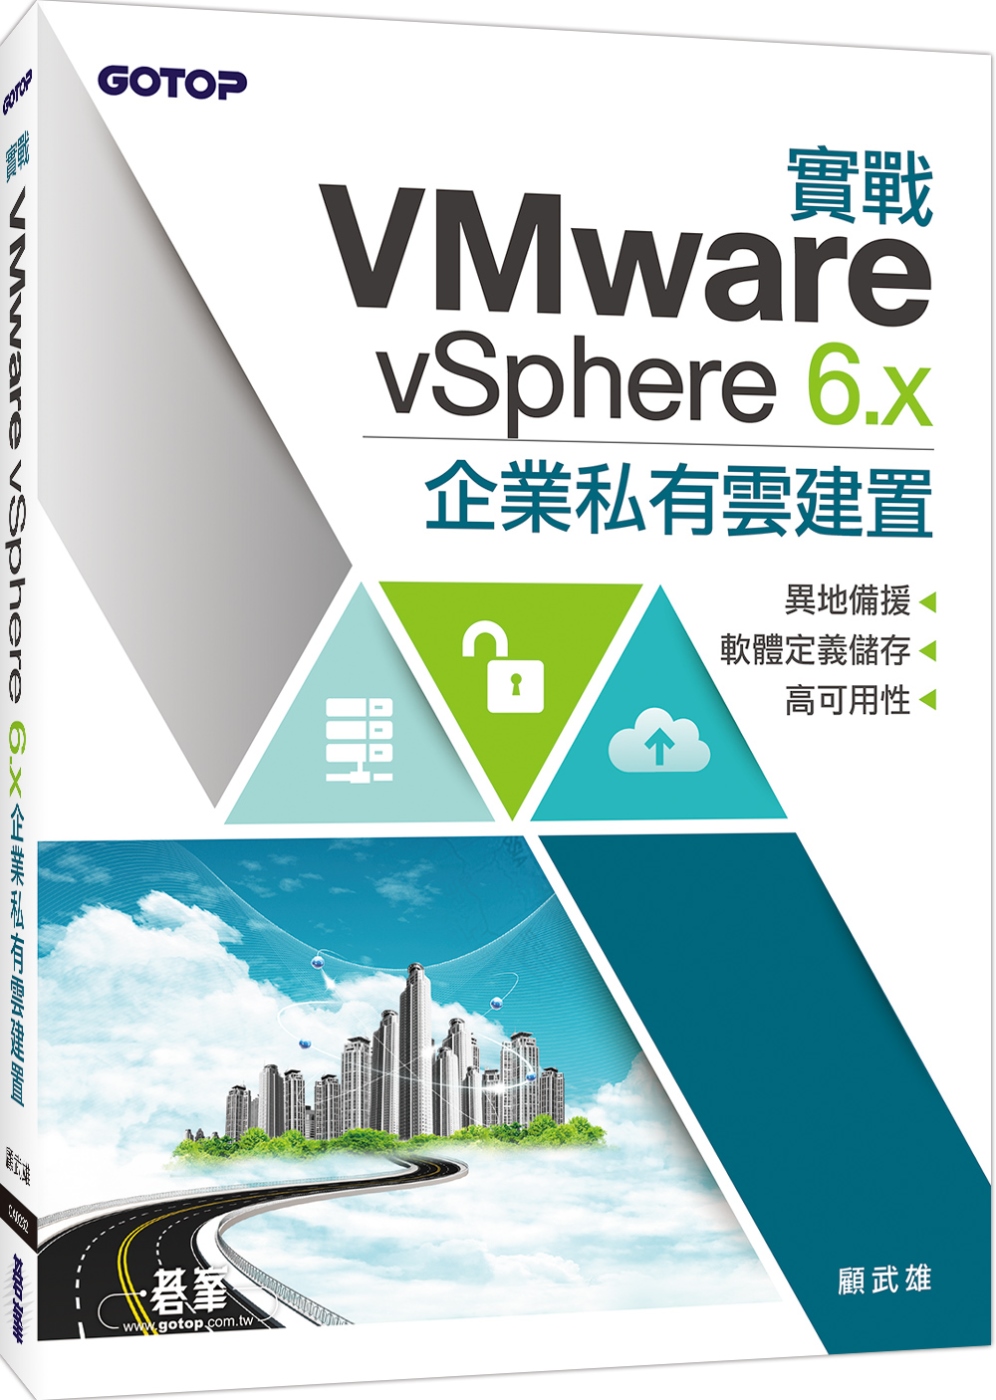 實戰VMware vSphere 6.x企業私有雲建置：異地備援x軟體定義儲存x高可用性